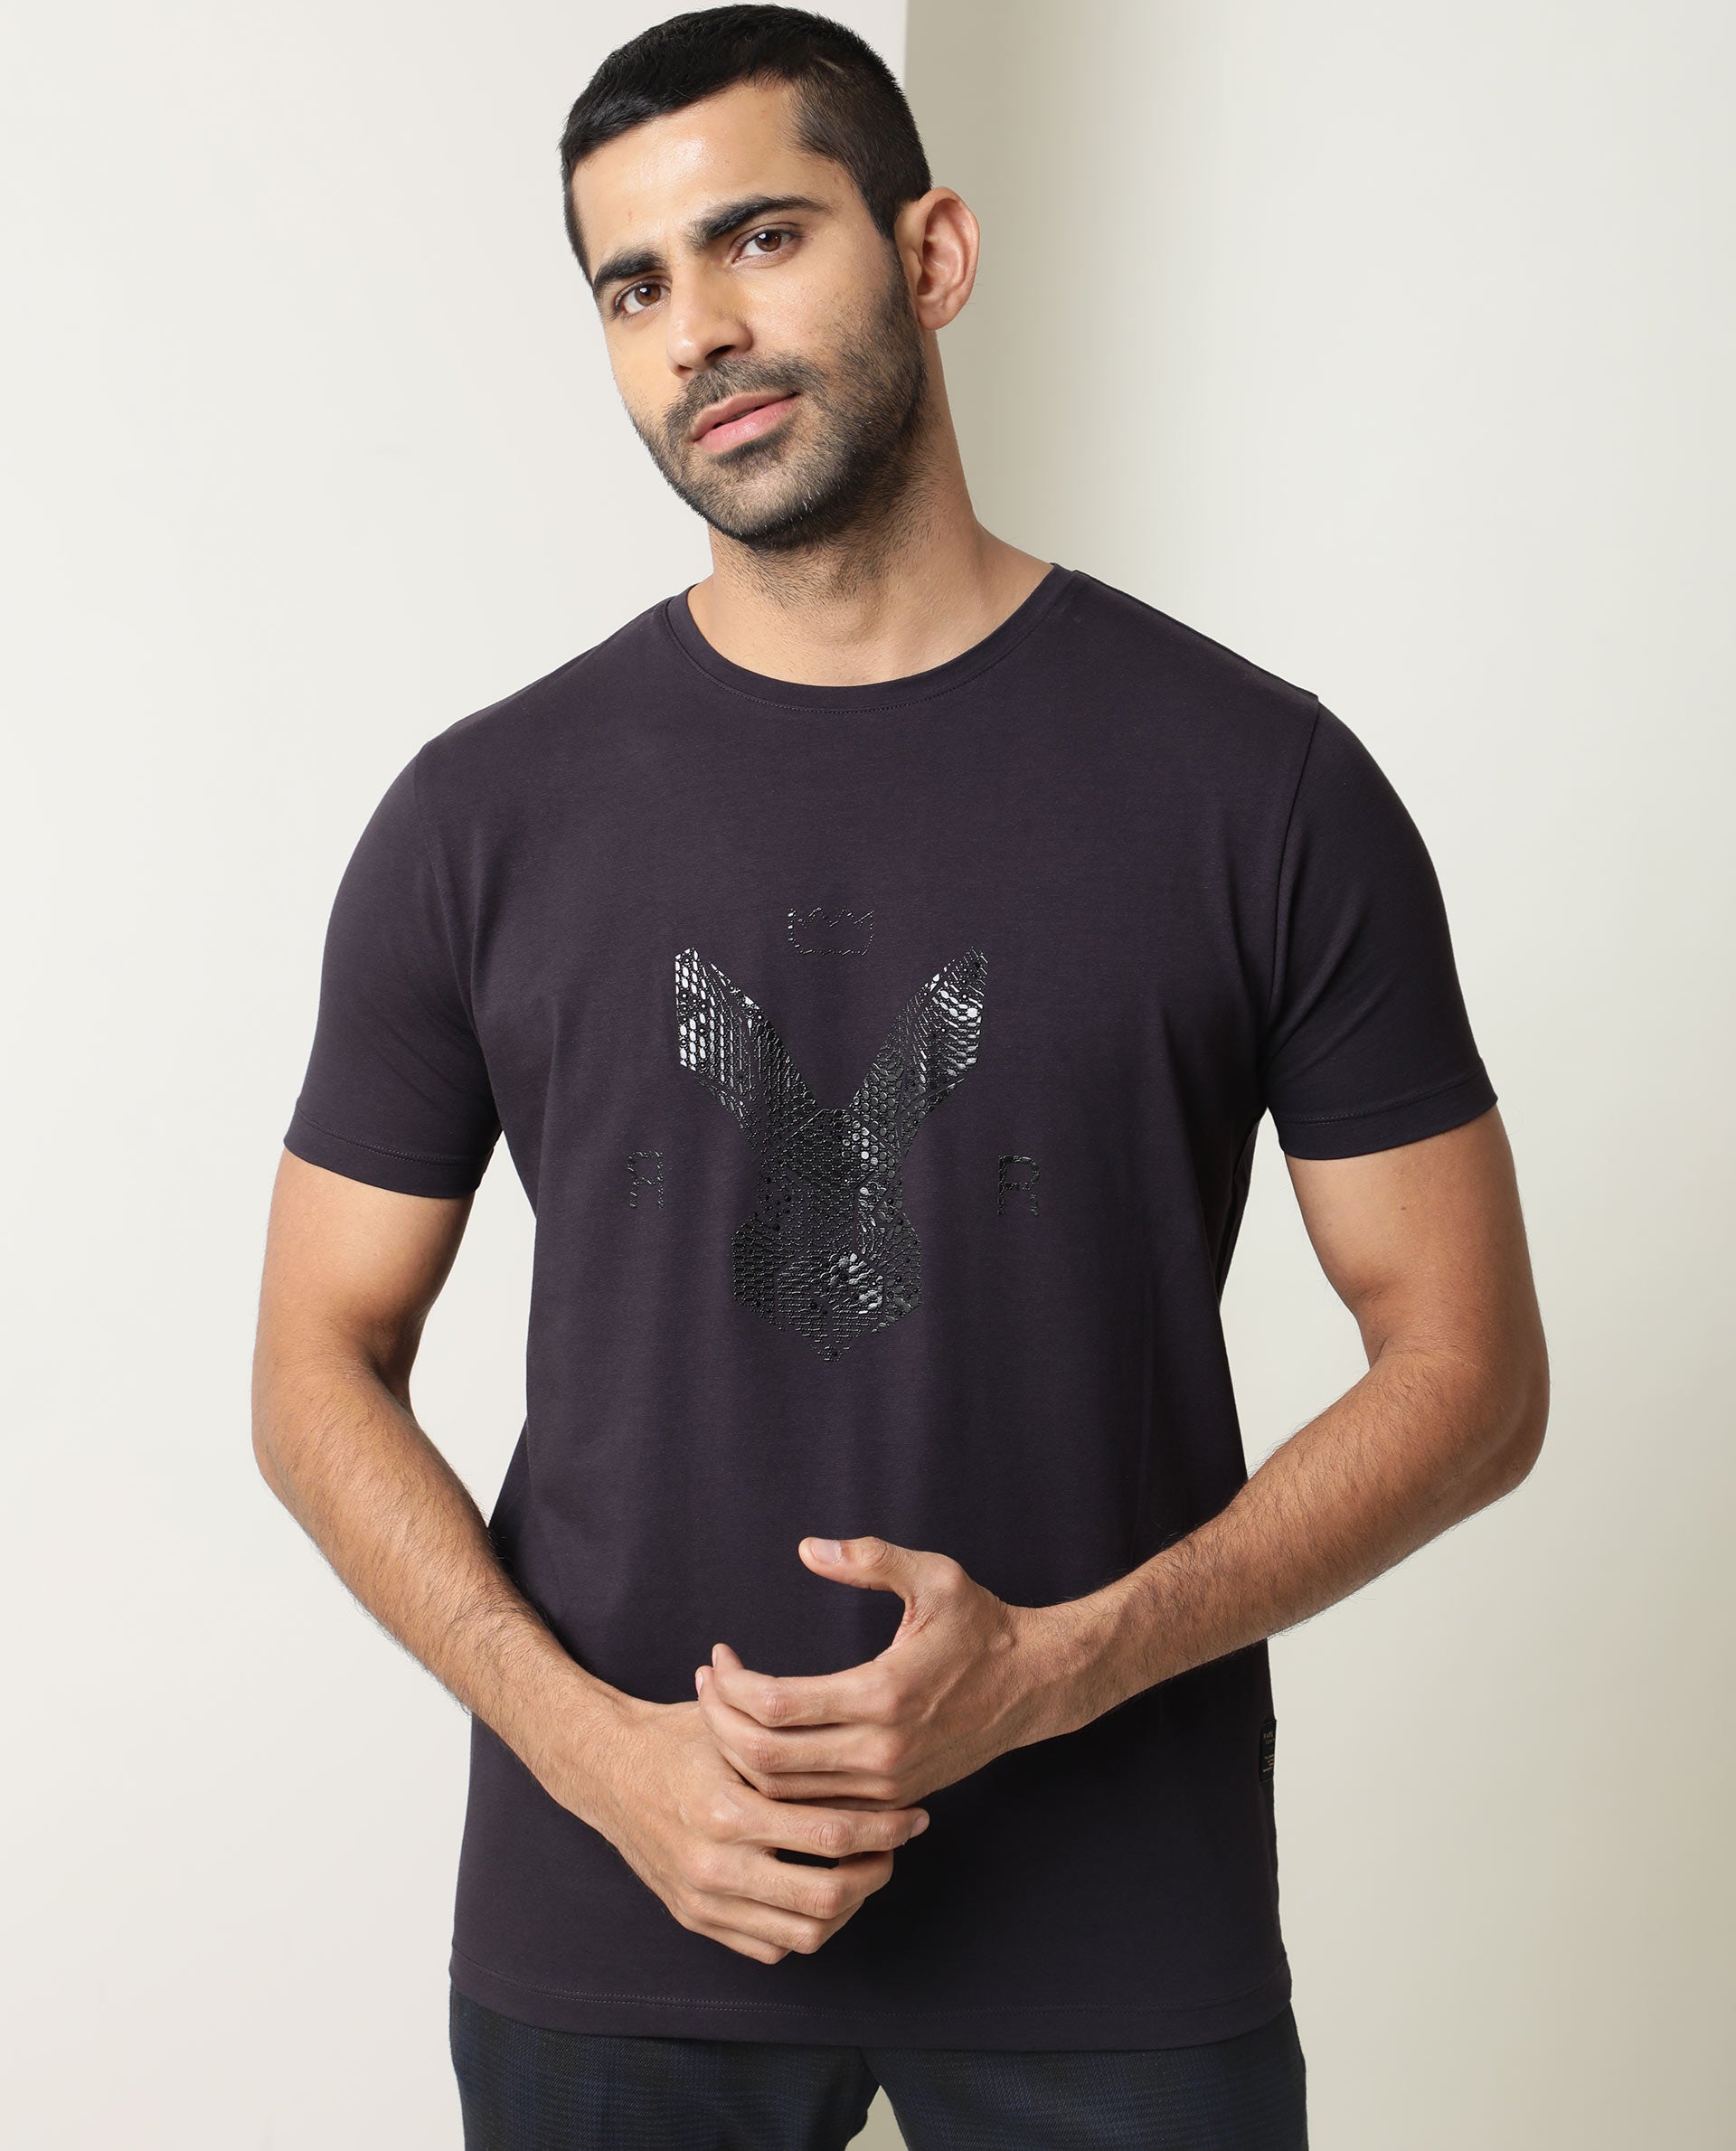 Black V-Neck T-Shirt For Men